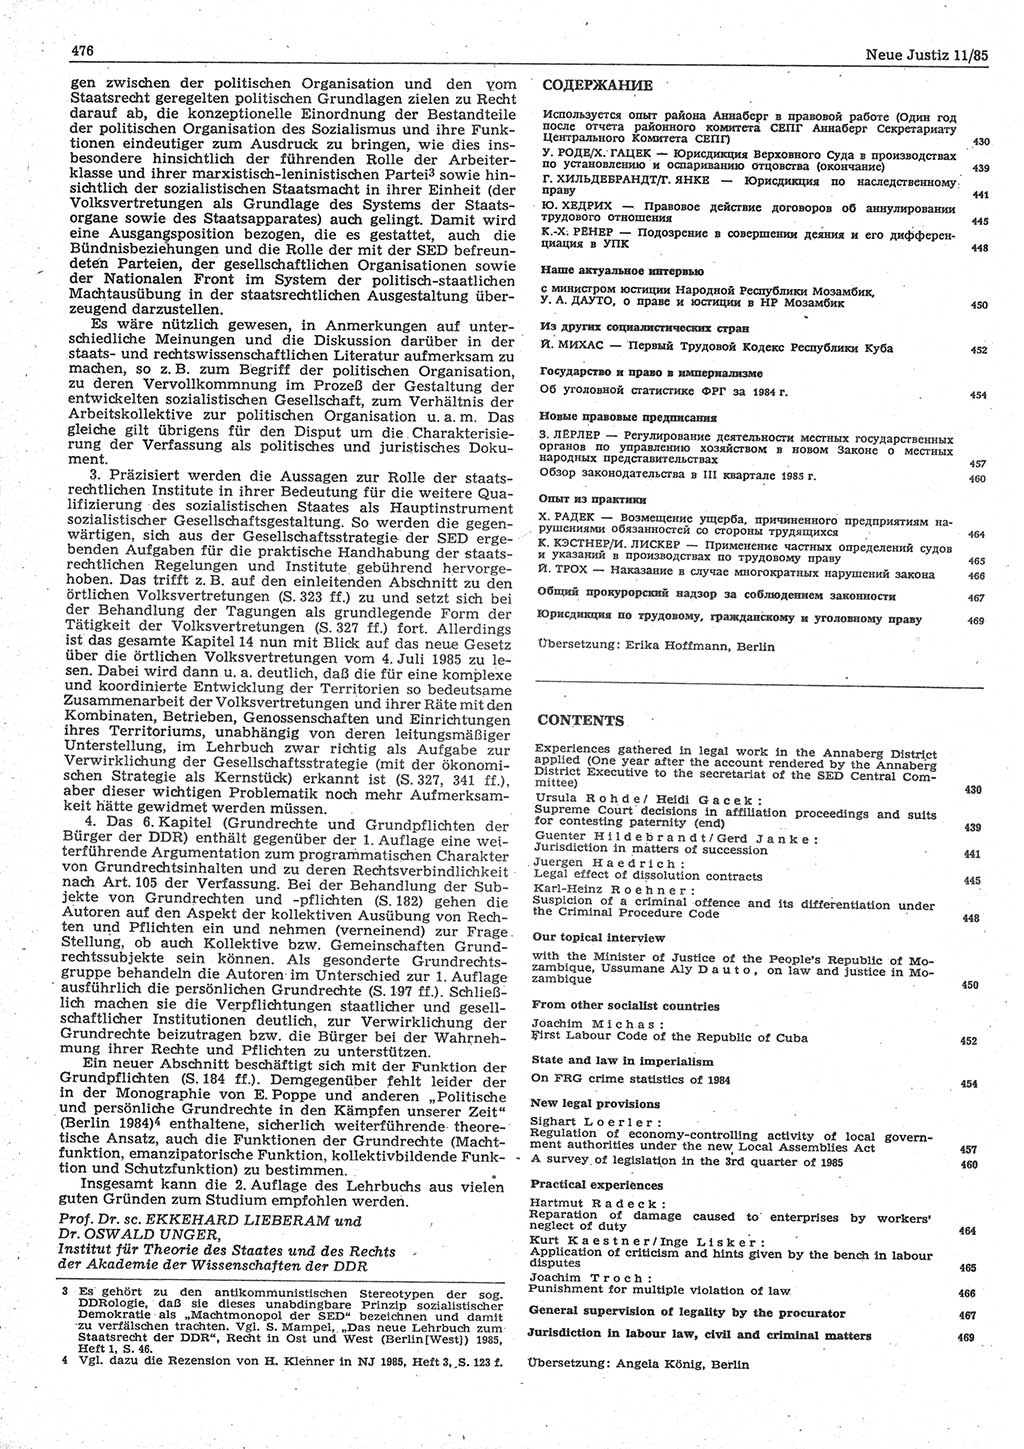 Neue Justiz (NJ), Zeitschrift für sozialistisches Recht und Gesetzlichkeit [Deutsche Demokratische Republik (DDR)], 39. Jahrgang 1985, Seite 476 (NJ DDR 1985, S. 476)